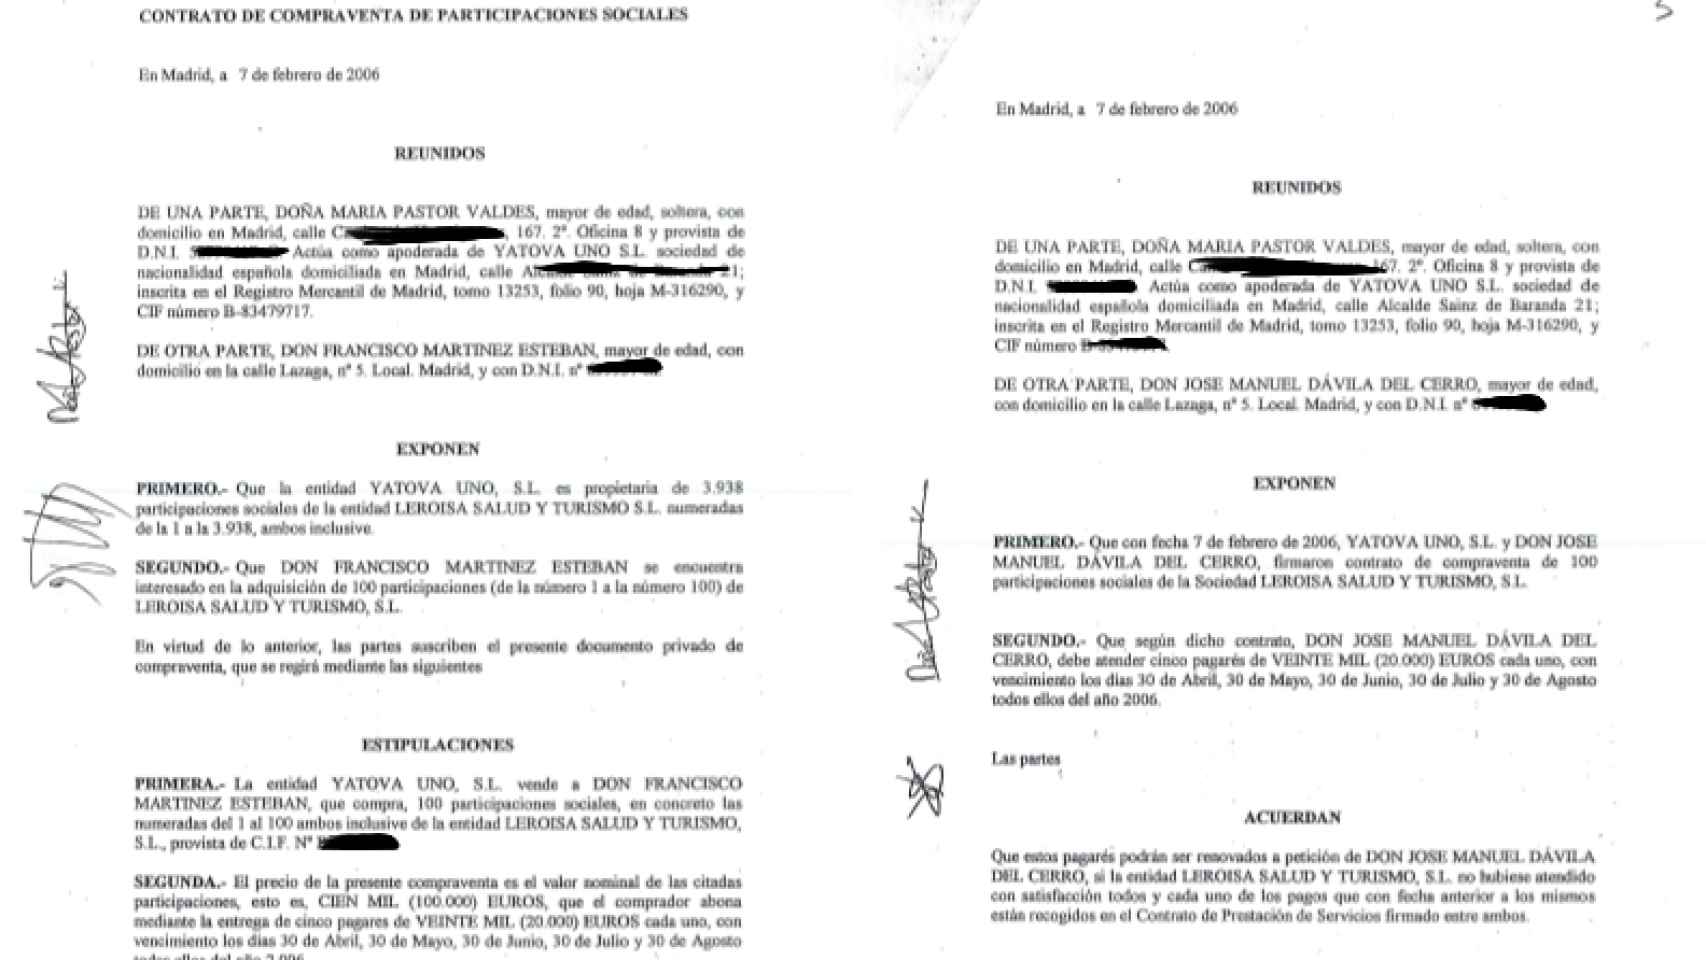 Contratos de compraventa de participaciones de Leroisa SL y de honorarios firmados por María Pastor Valdés.